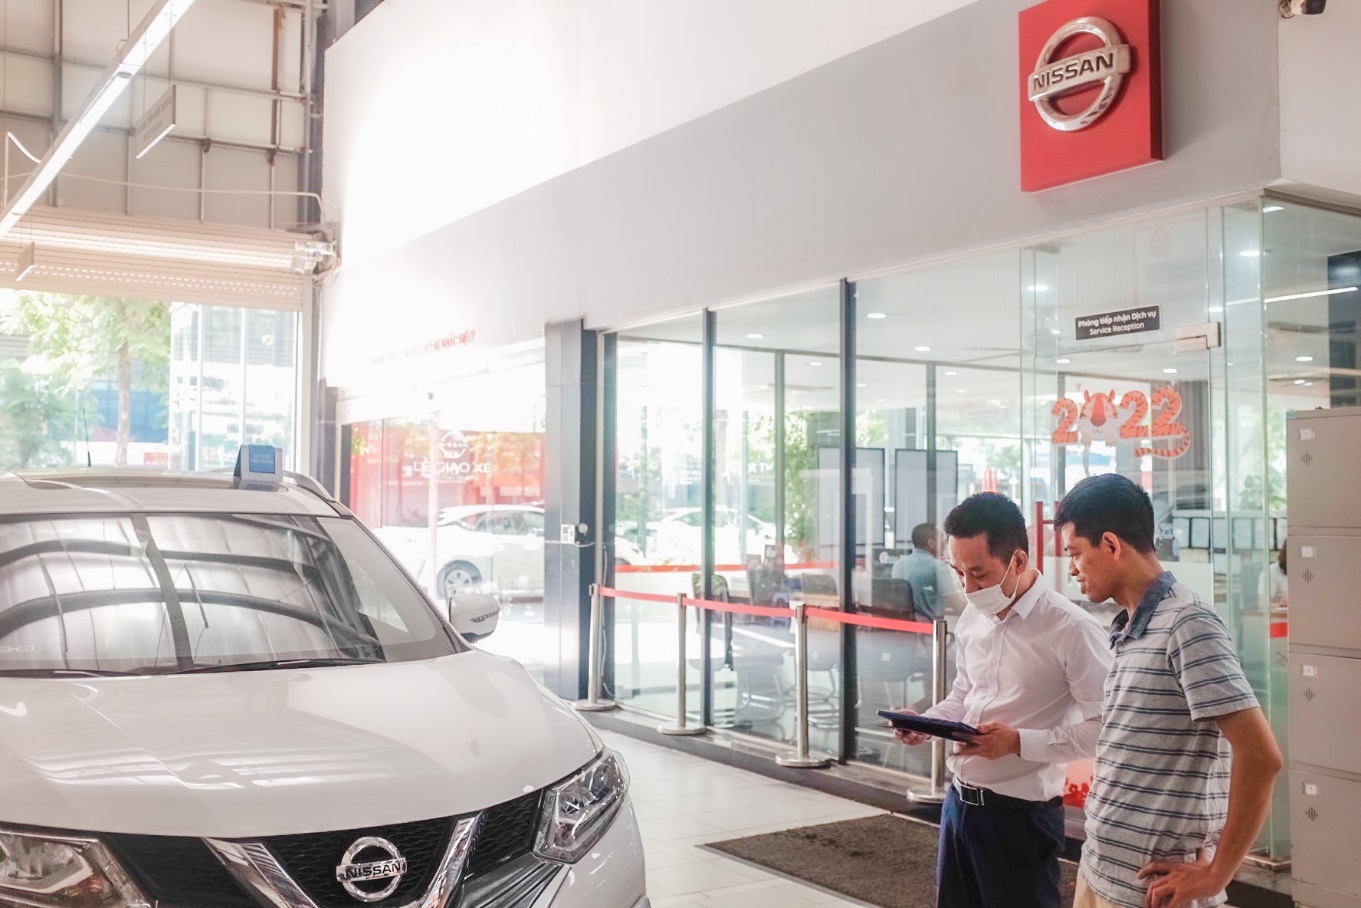 Nissan Việt Nam triển khai chương trình Bảo dưỡng xe nhanh - Đón hè mát lạnh - 3